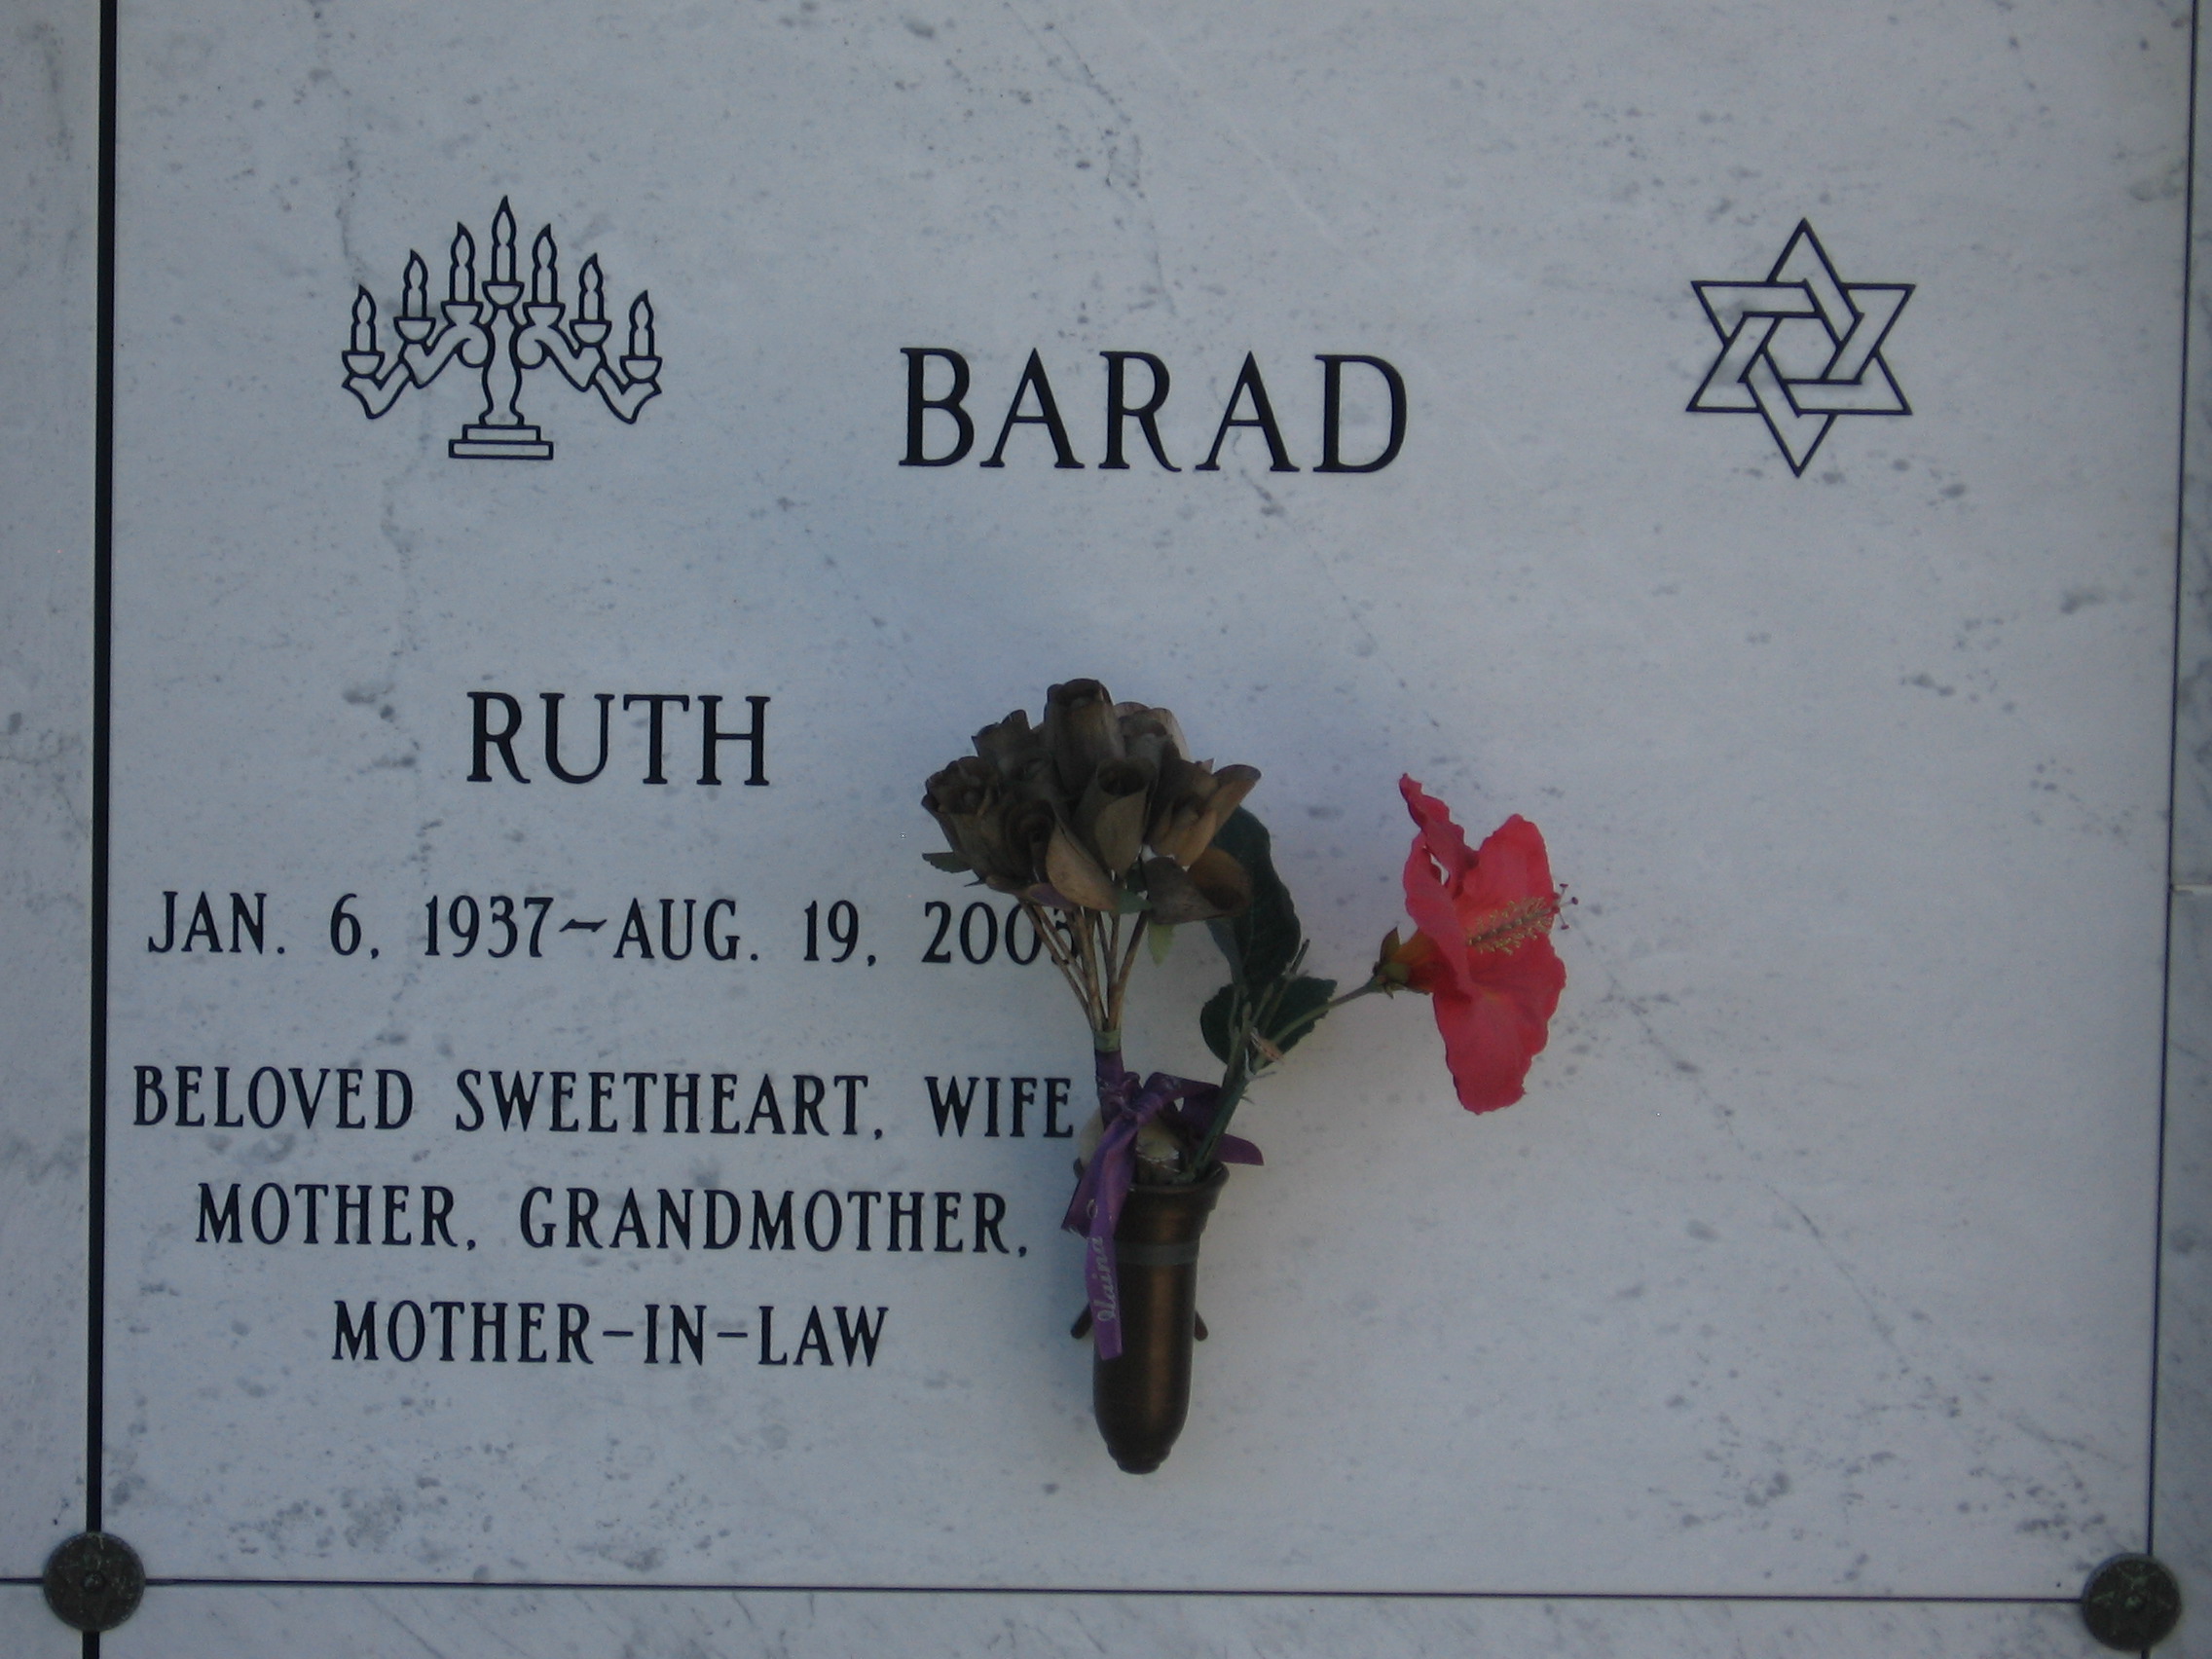 Ruth Barad